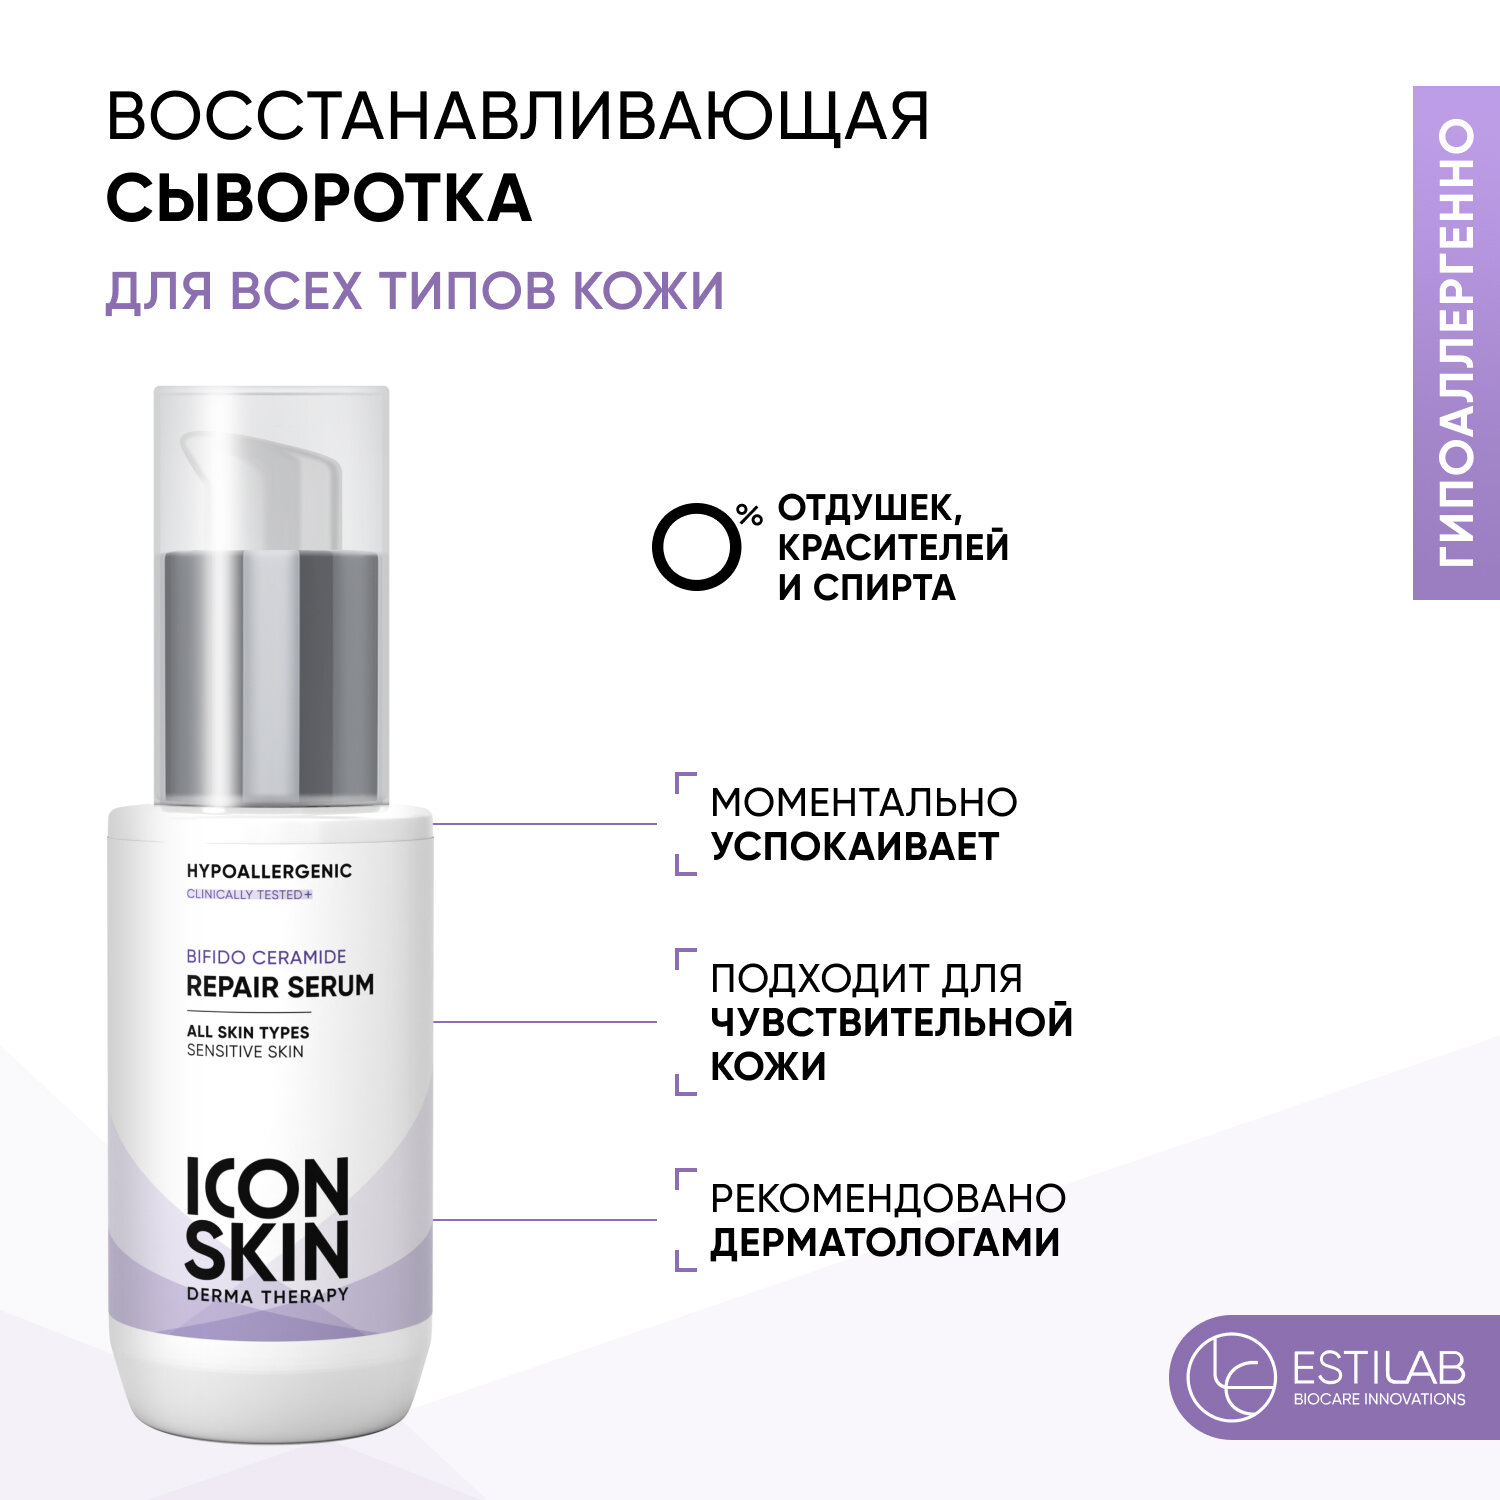 ICON SKIN Восстанавливающая сыворотка для лица Bifido Ceramide с комплексом церамидов и пребиотиков для всех типов кожи, включая чувствительную, 30 мл